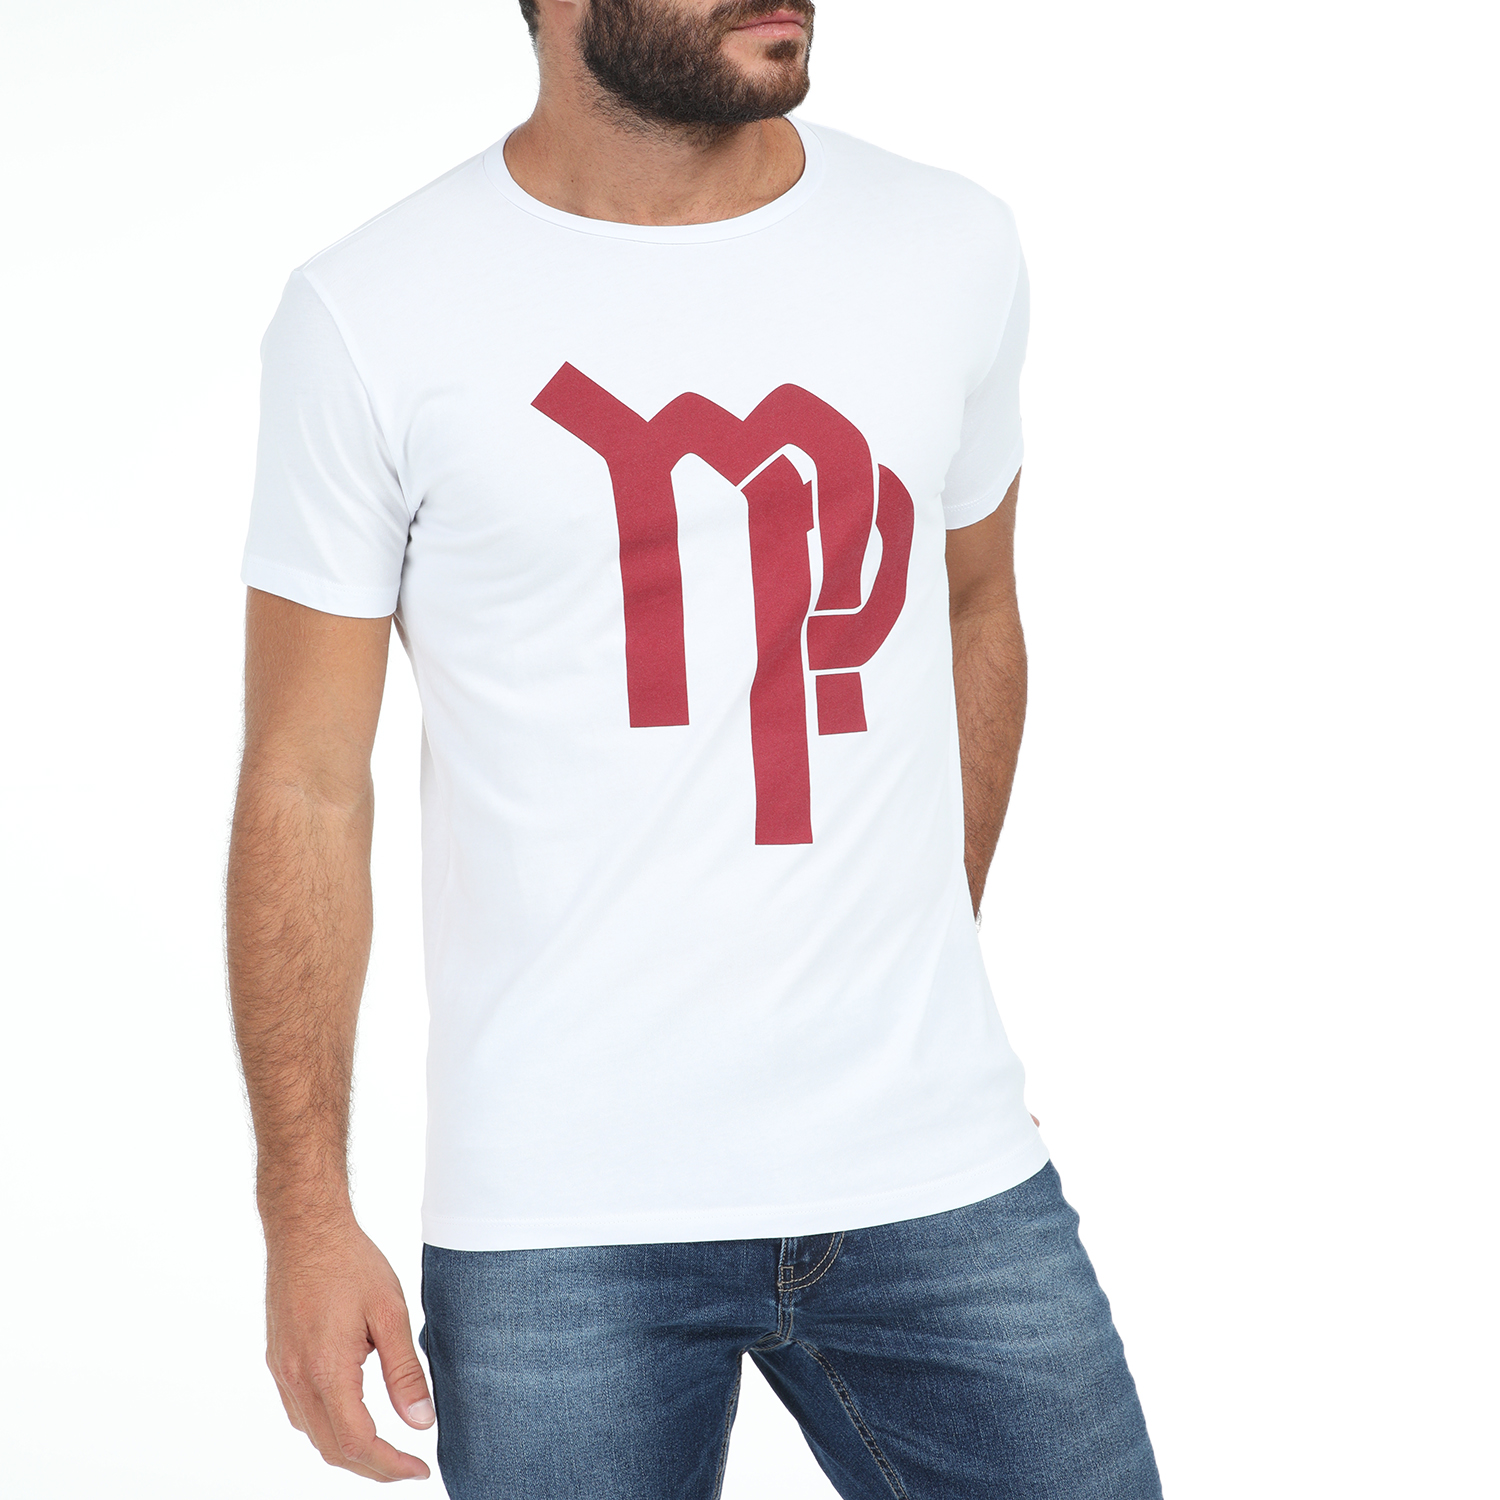 Ανδρικά/Ρούχα/Μπλούζες/Κοντομάνικες IMPERIAL - Ανδρικό t-shirt IMPERIAL λευκό